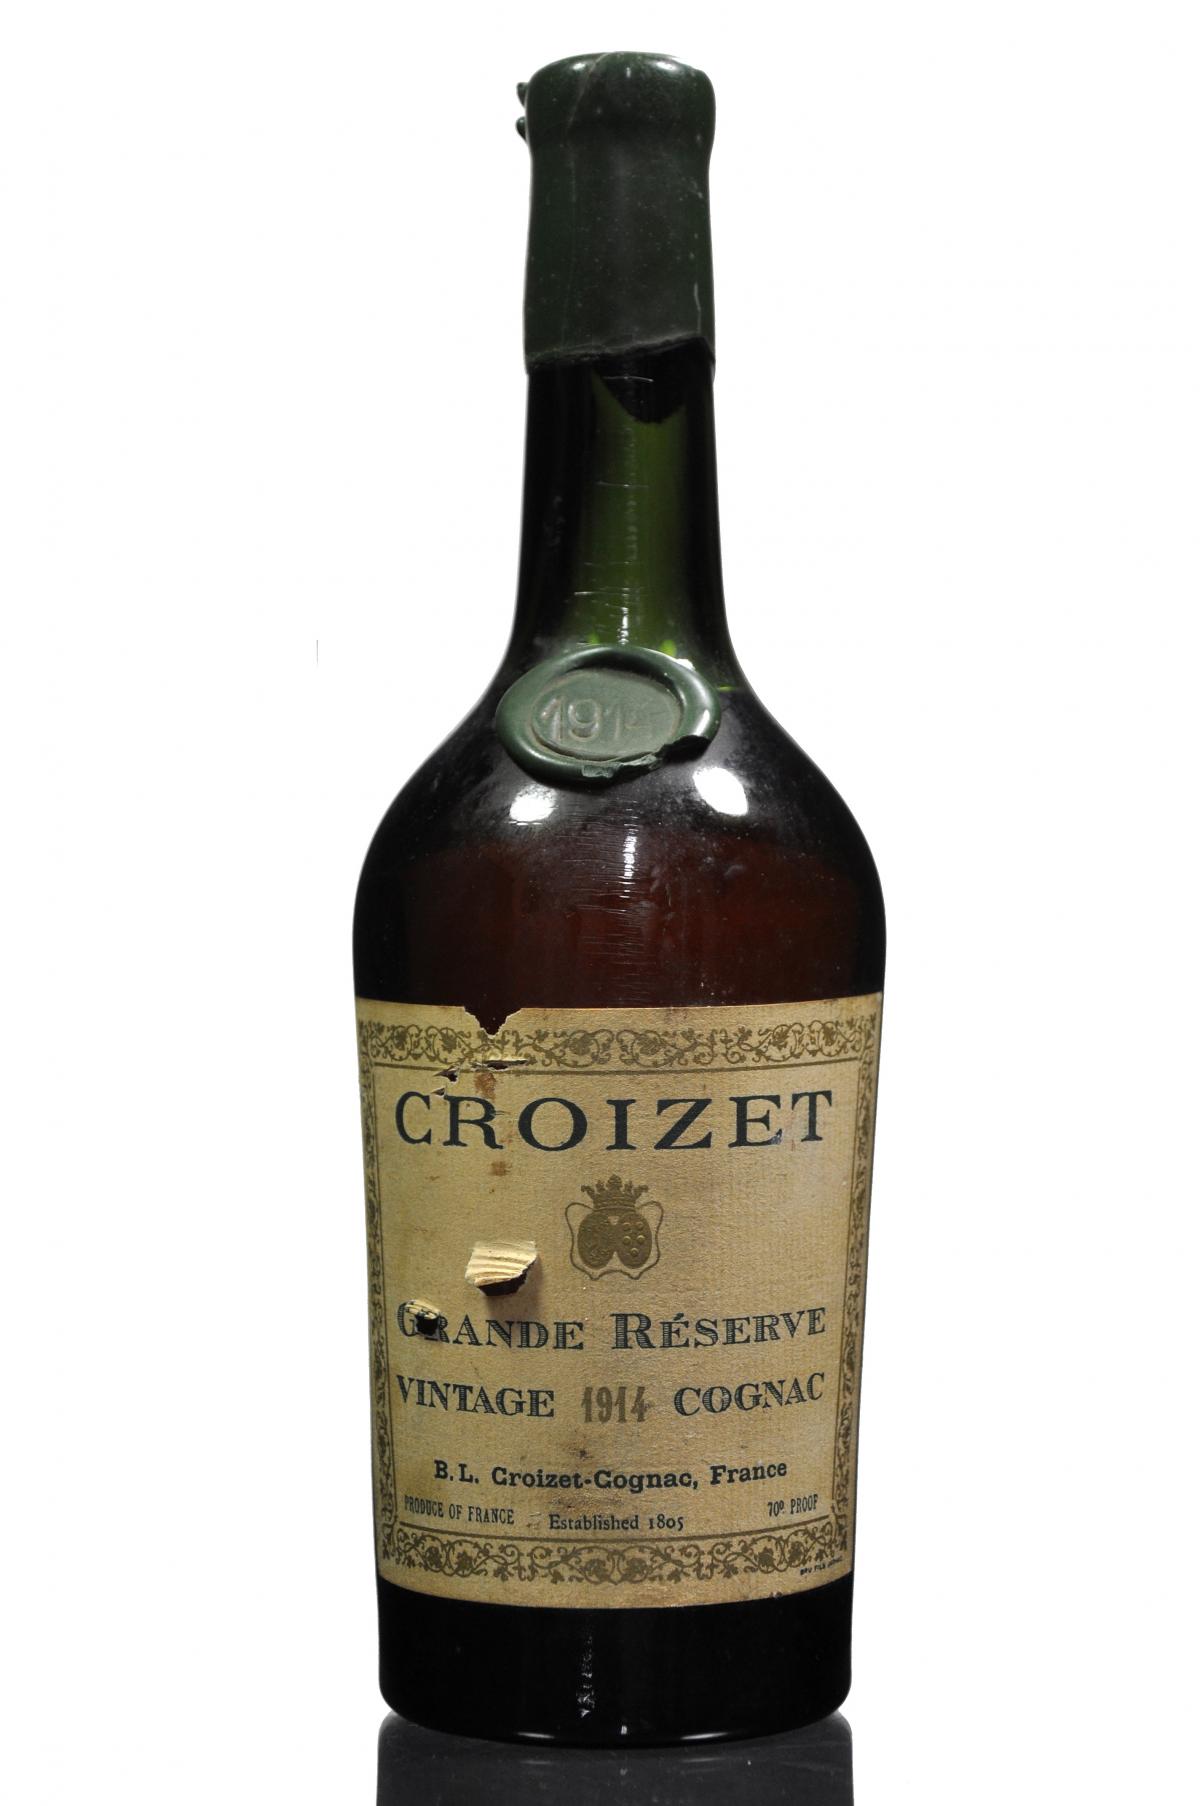 Croizet 1914 Cognac